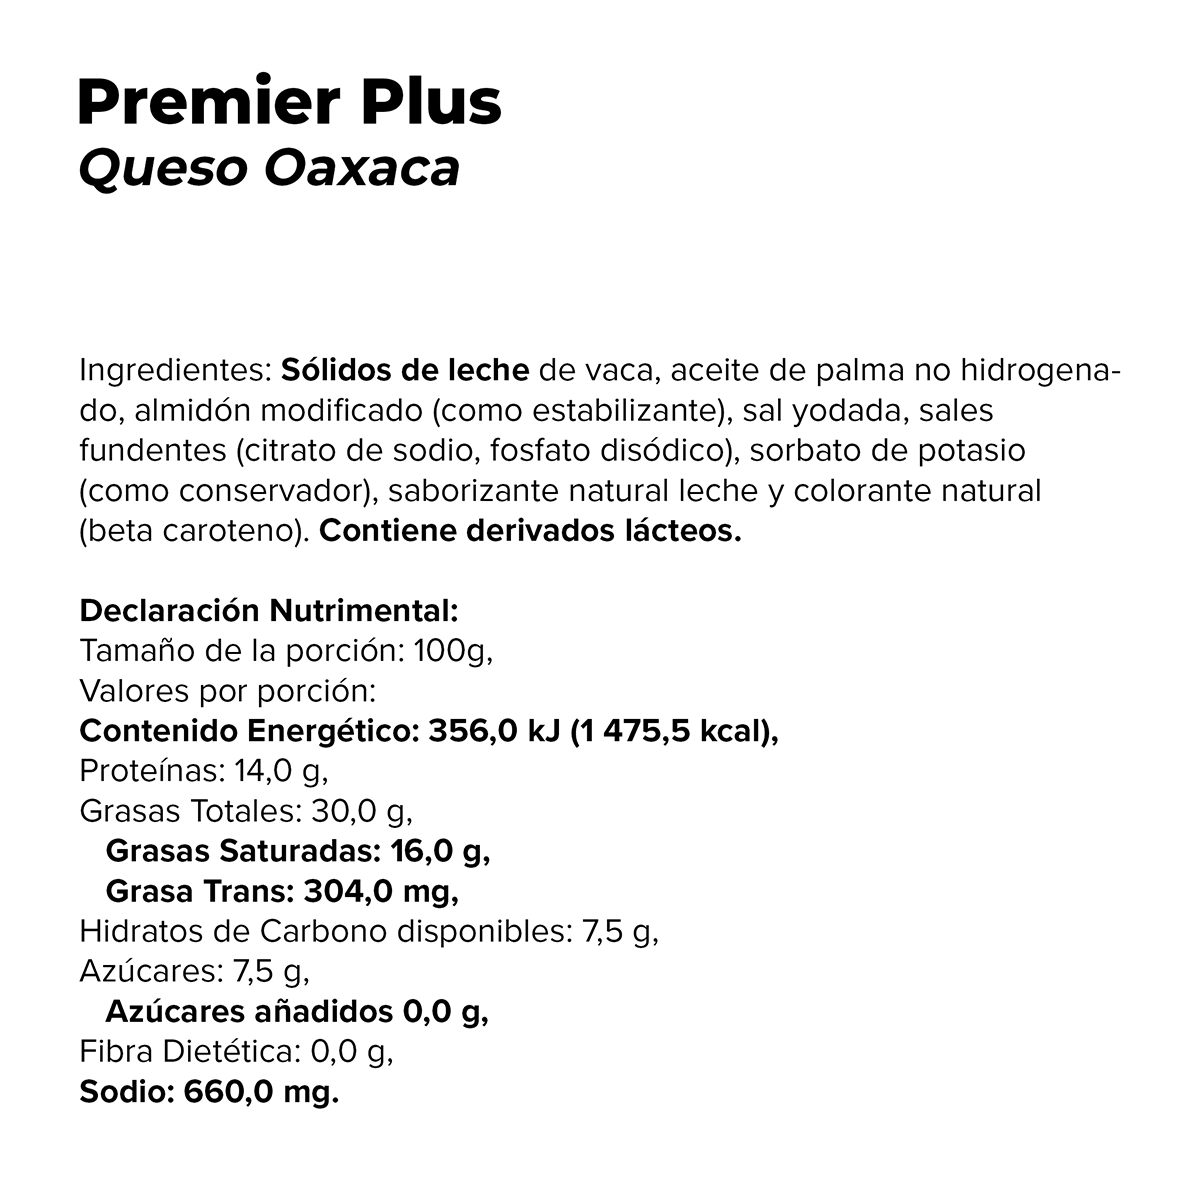 Queso Oaxaca